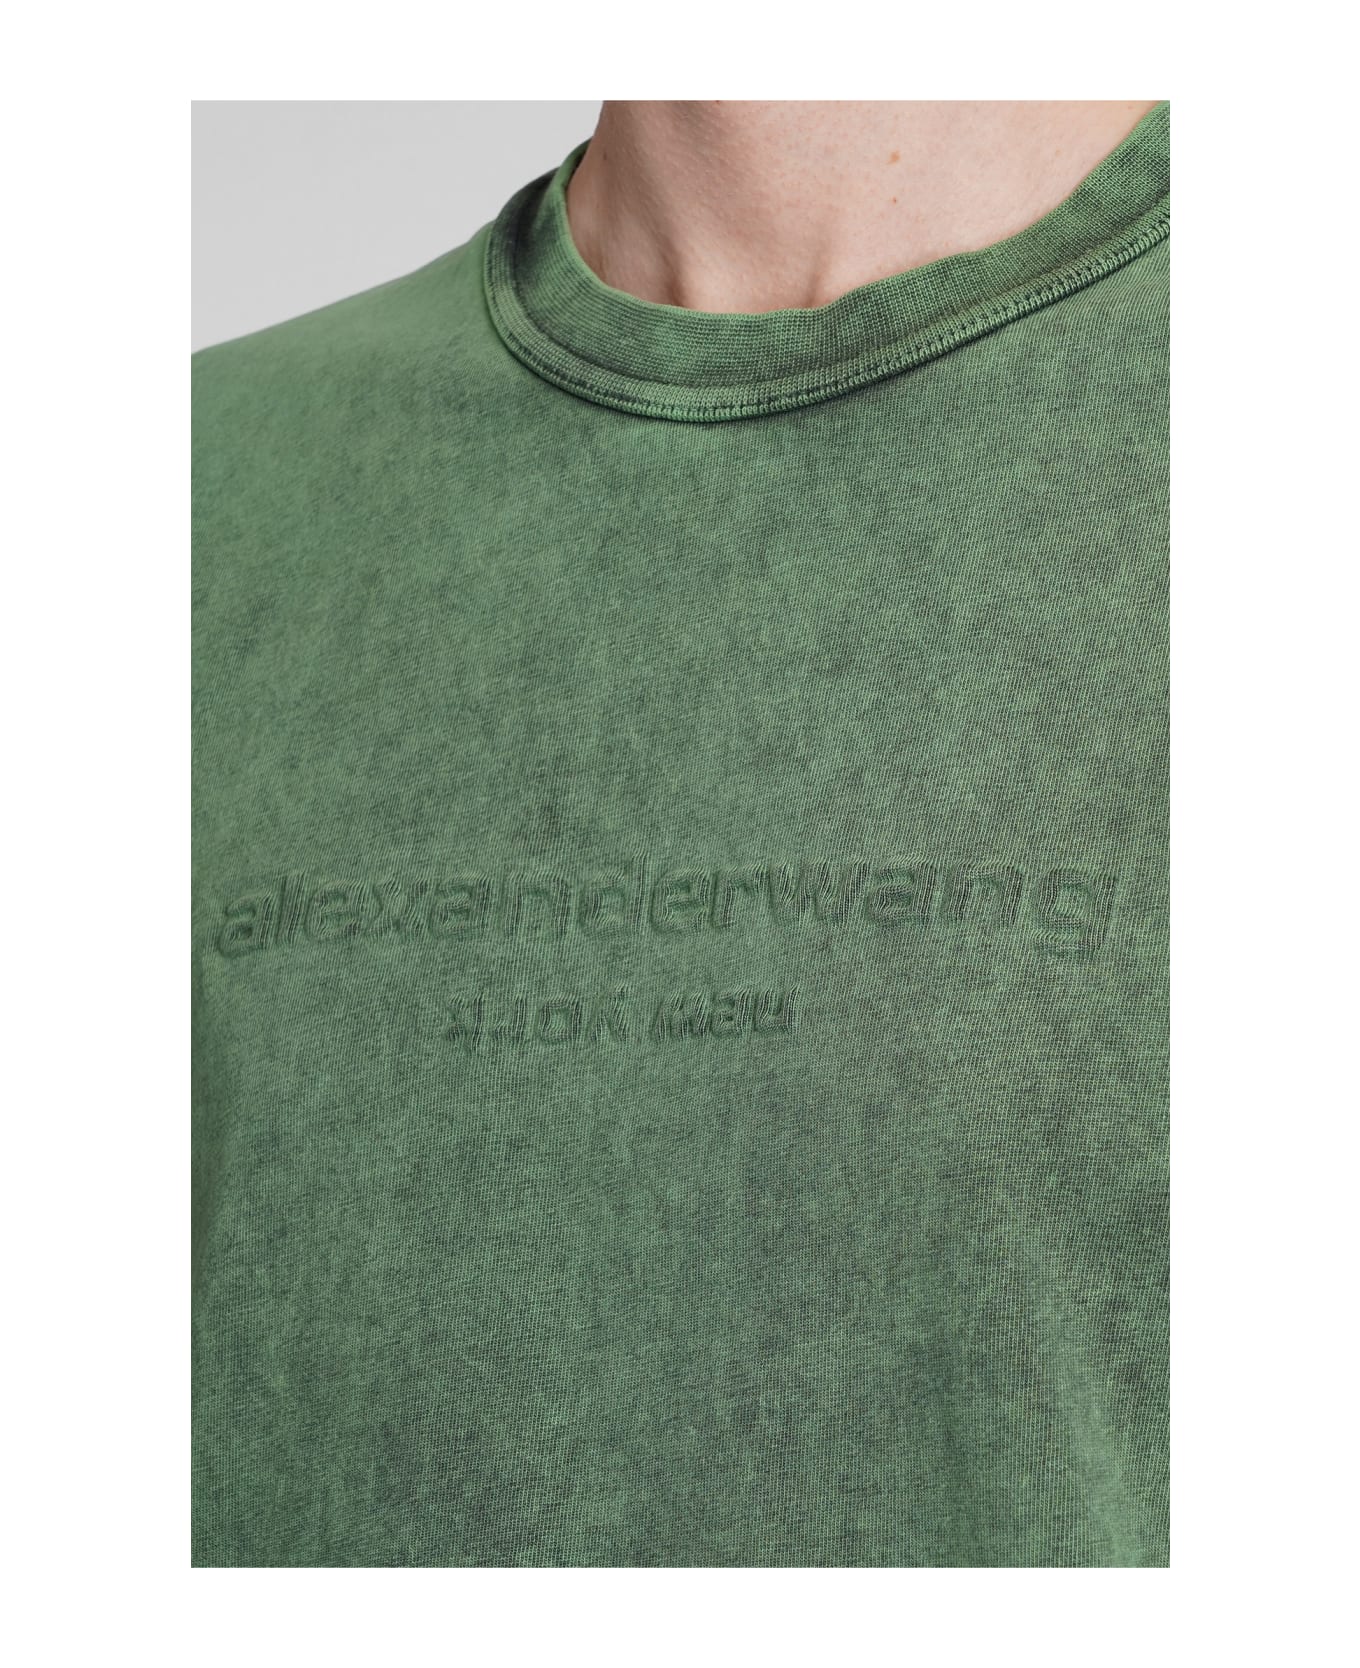 Alexander Wang T-shirt In Green Cotton - green